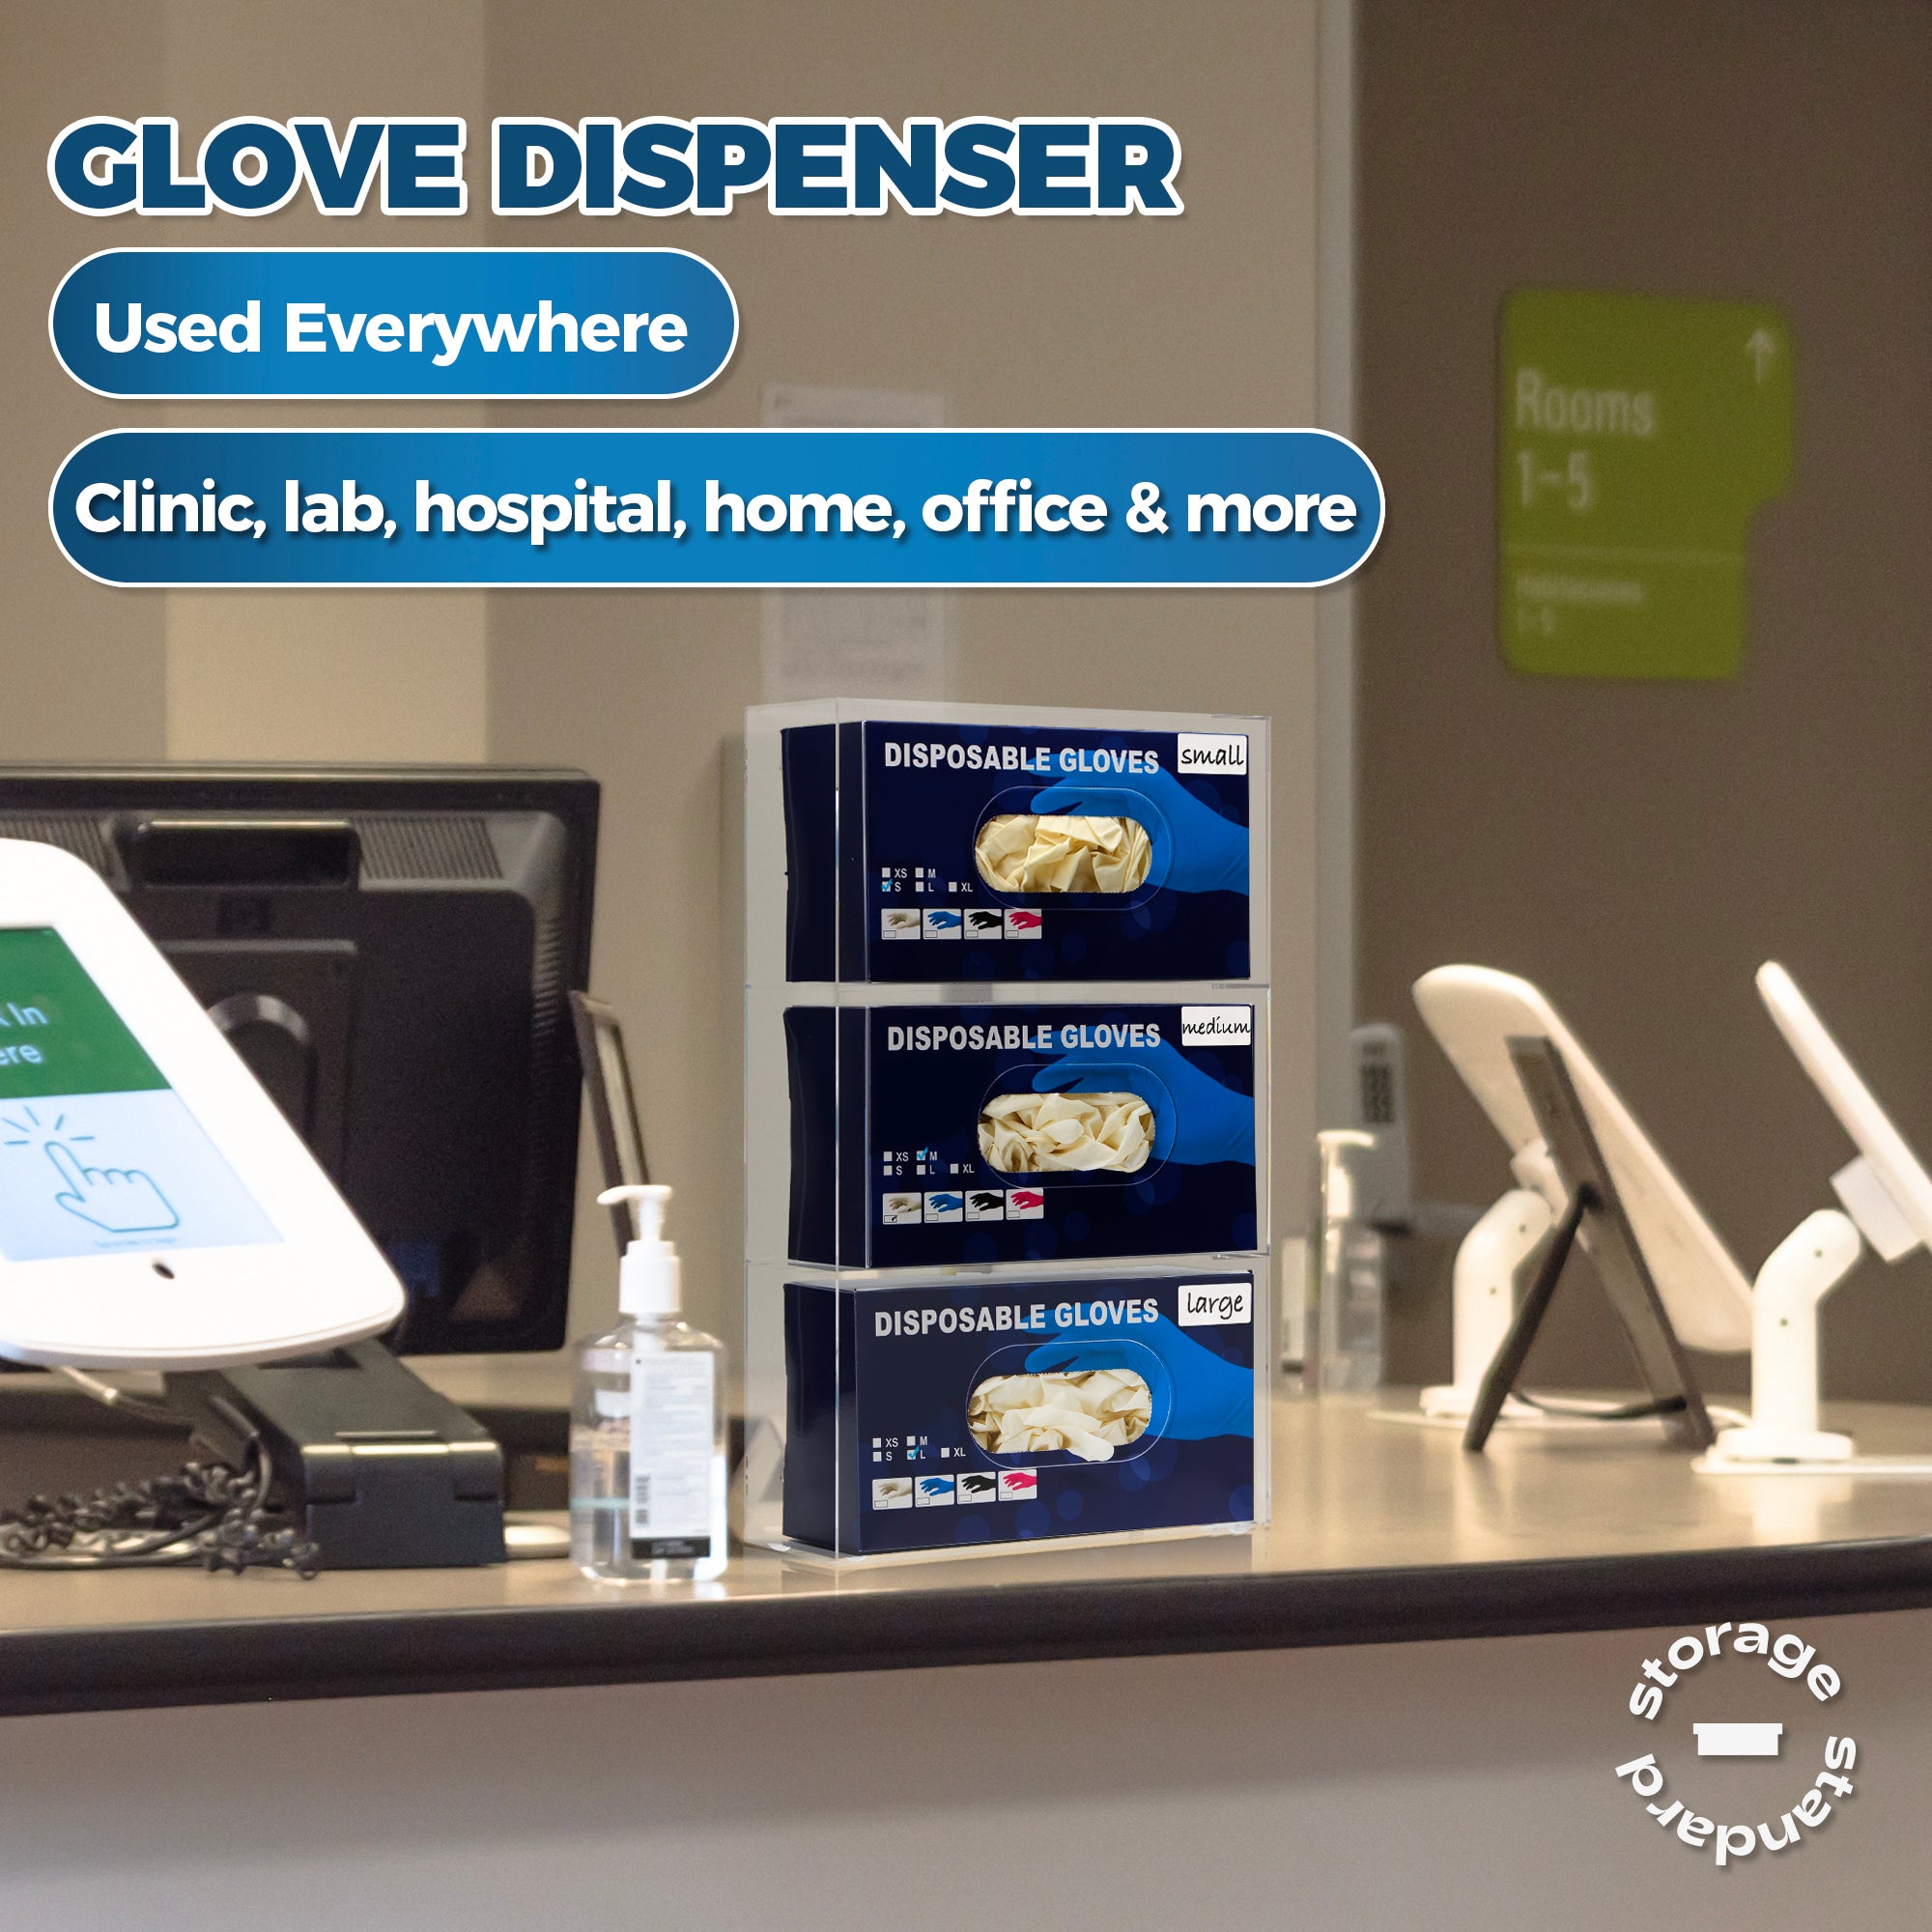 Storage Standard Triple Glove Box Holder Wall Mount Glove Dispenser - Disposable Glove Holder Wall Mount Glove Station for Medical Gloves, Multipurpose Kitchen Gloves Holder - 16.5 x 10 x 3.5 Inches